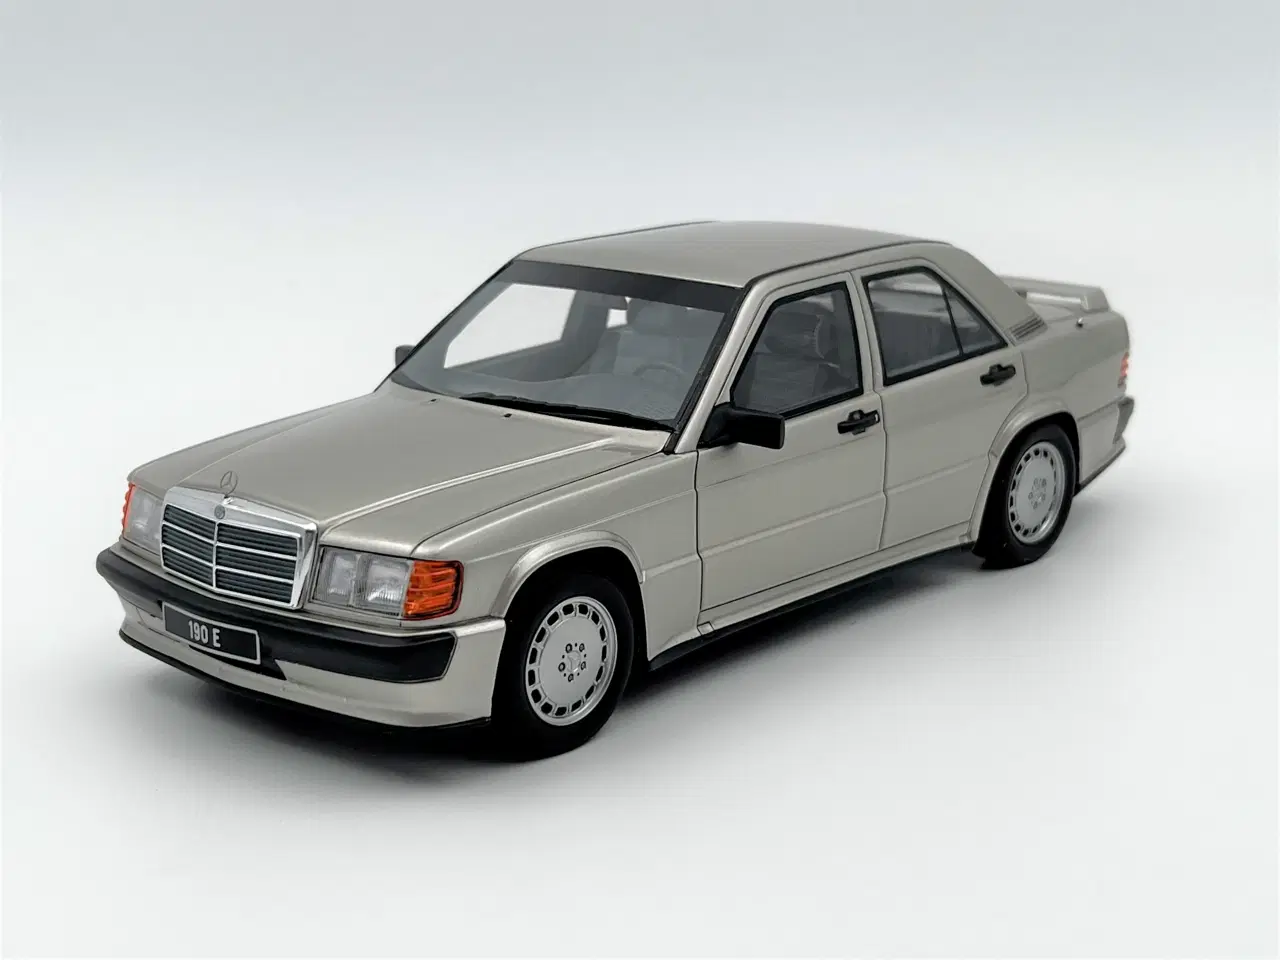 Billede 2 - 1988 Mercedes 190E 2,5 16v Limited Edition 1:18  